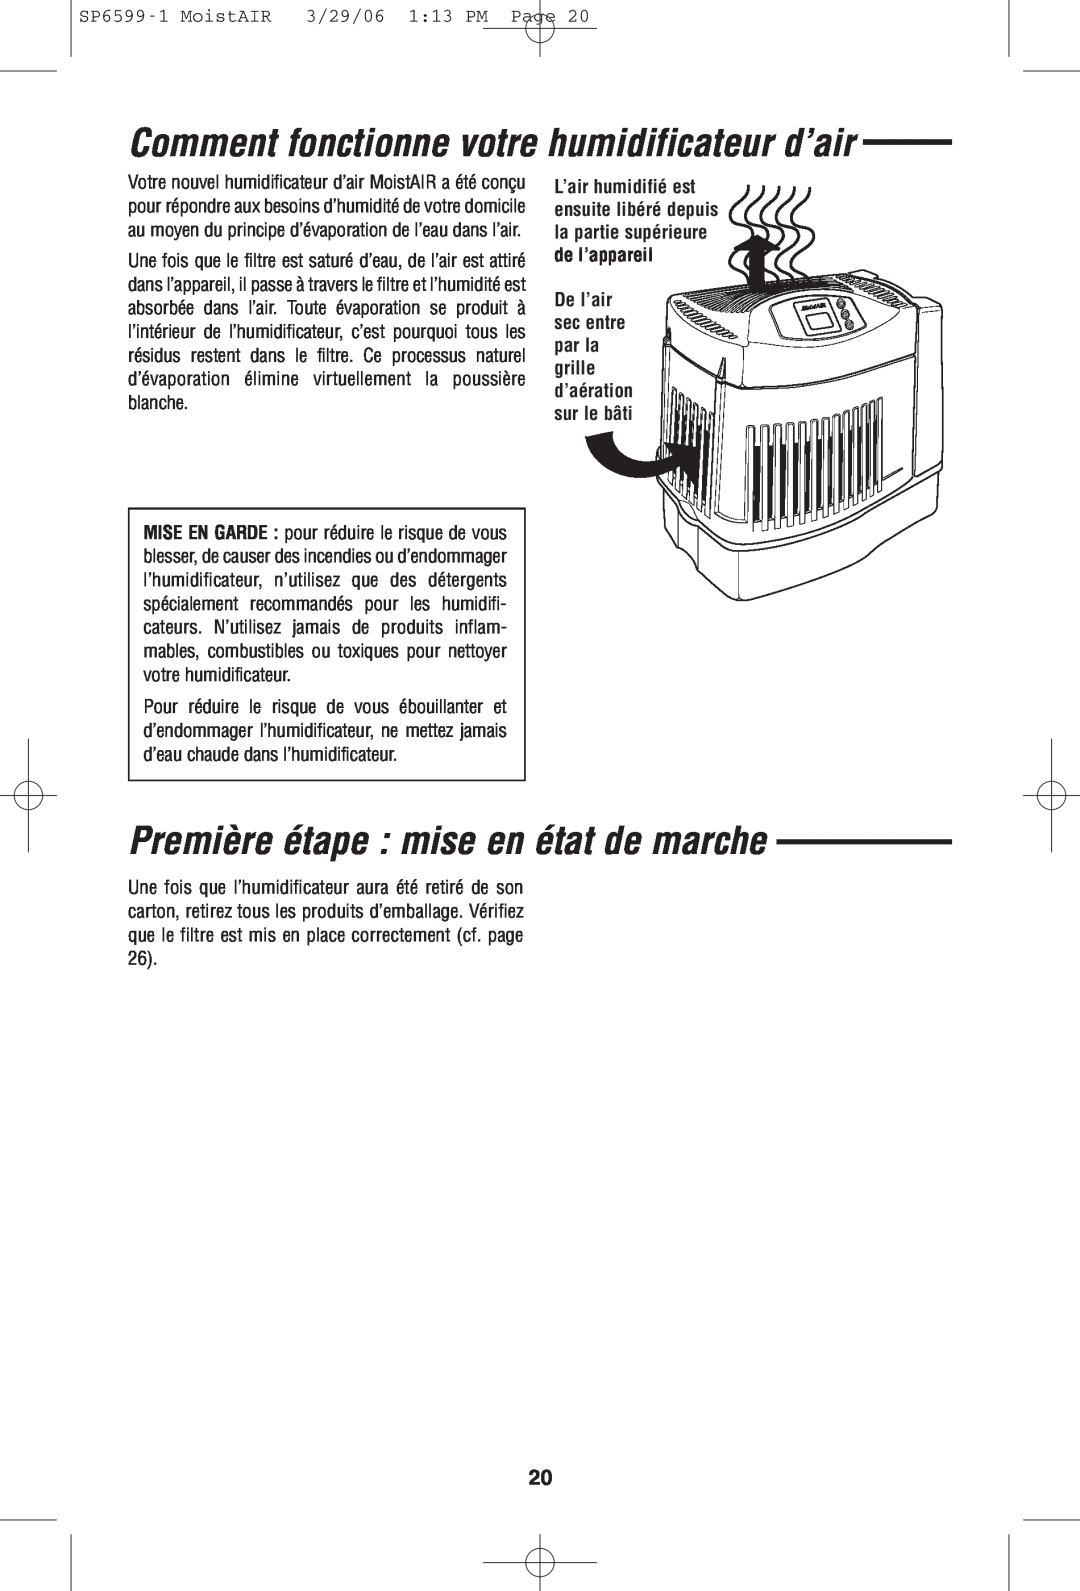 MoistAir MA 0800 0 owner manual Comment fonctionne votre humidificateur d’air, Première étape mise en état de marche 